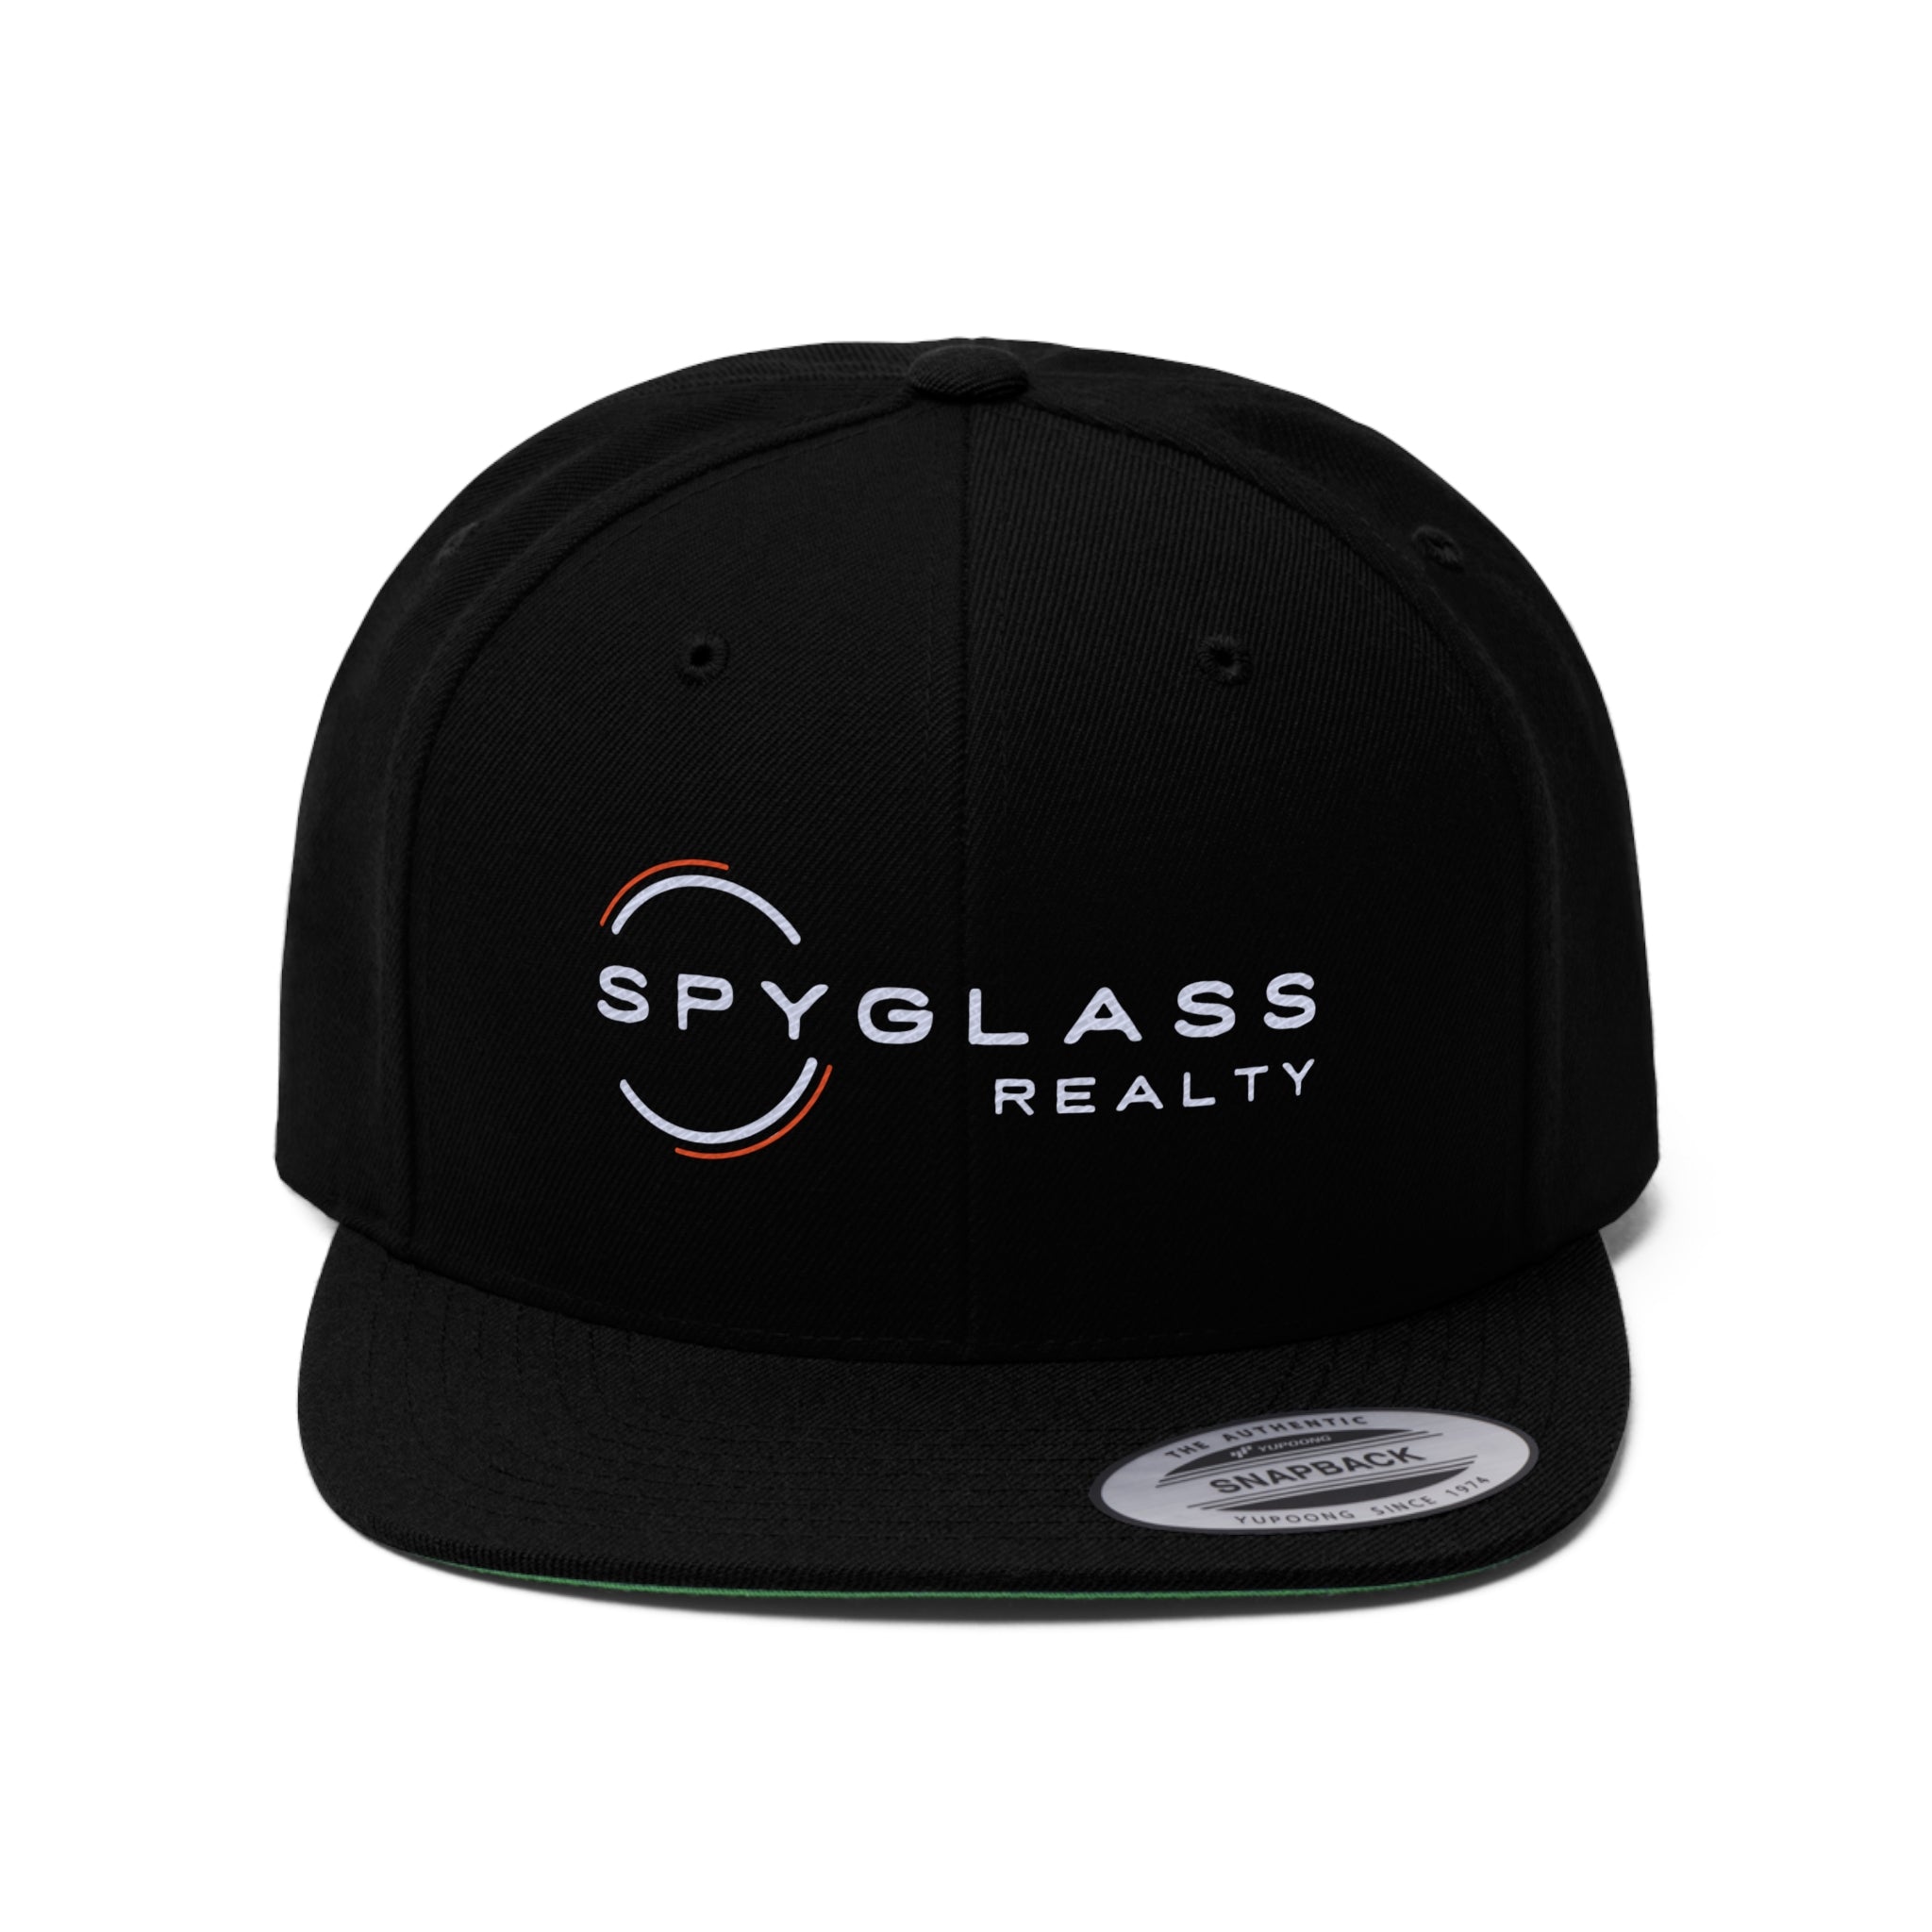 Spyglass Realty Flat Bill Hat